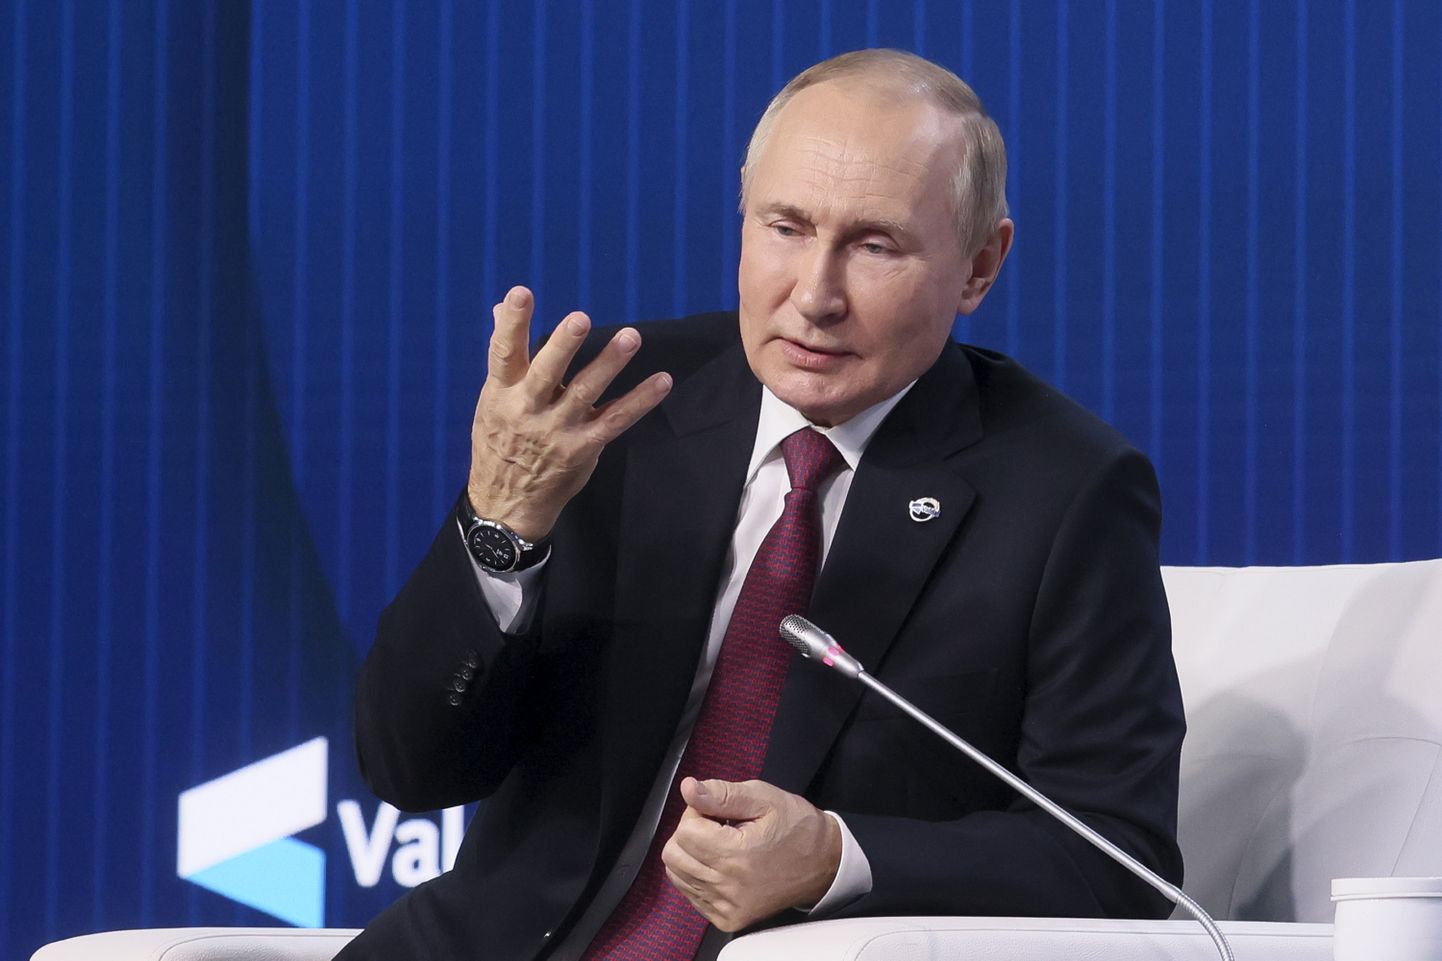 Venemaa president Vladimir Putin žestikuleerimas 27. oktoobril 2022 Venemaal Moskva oblastis Valdai rahvusvahelise diskussiooniklubi 19. aastakoosoleku plenaaristungil esinedes